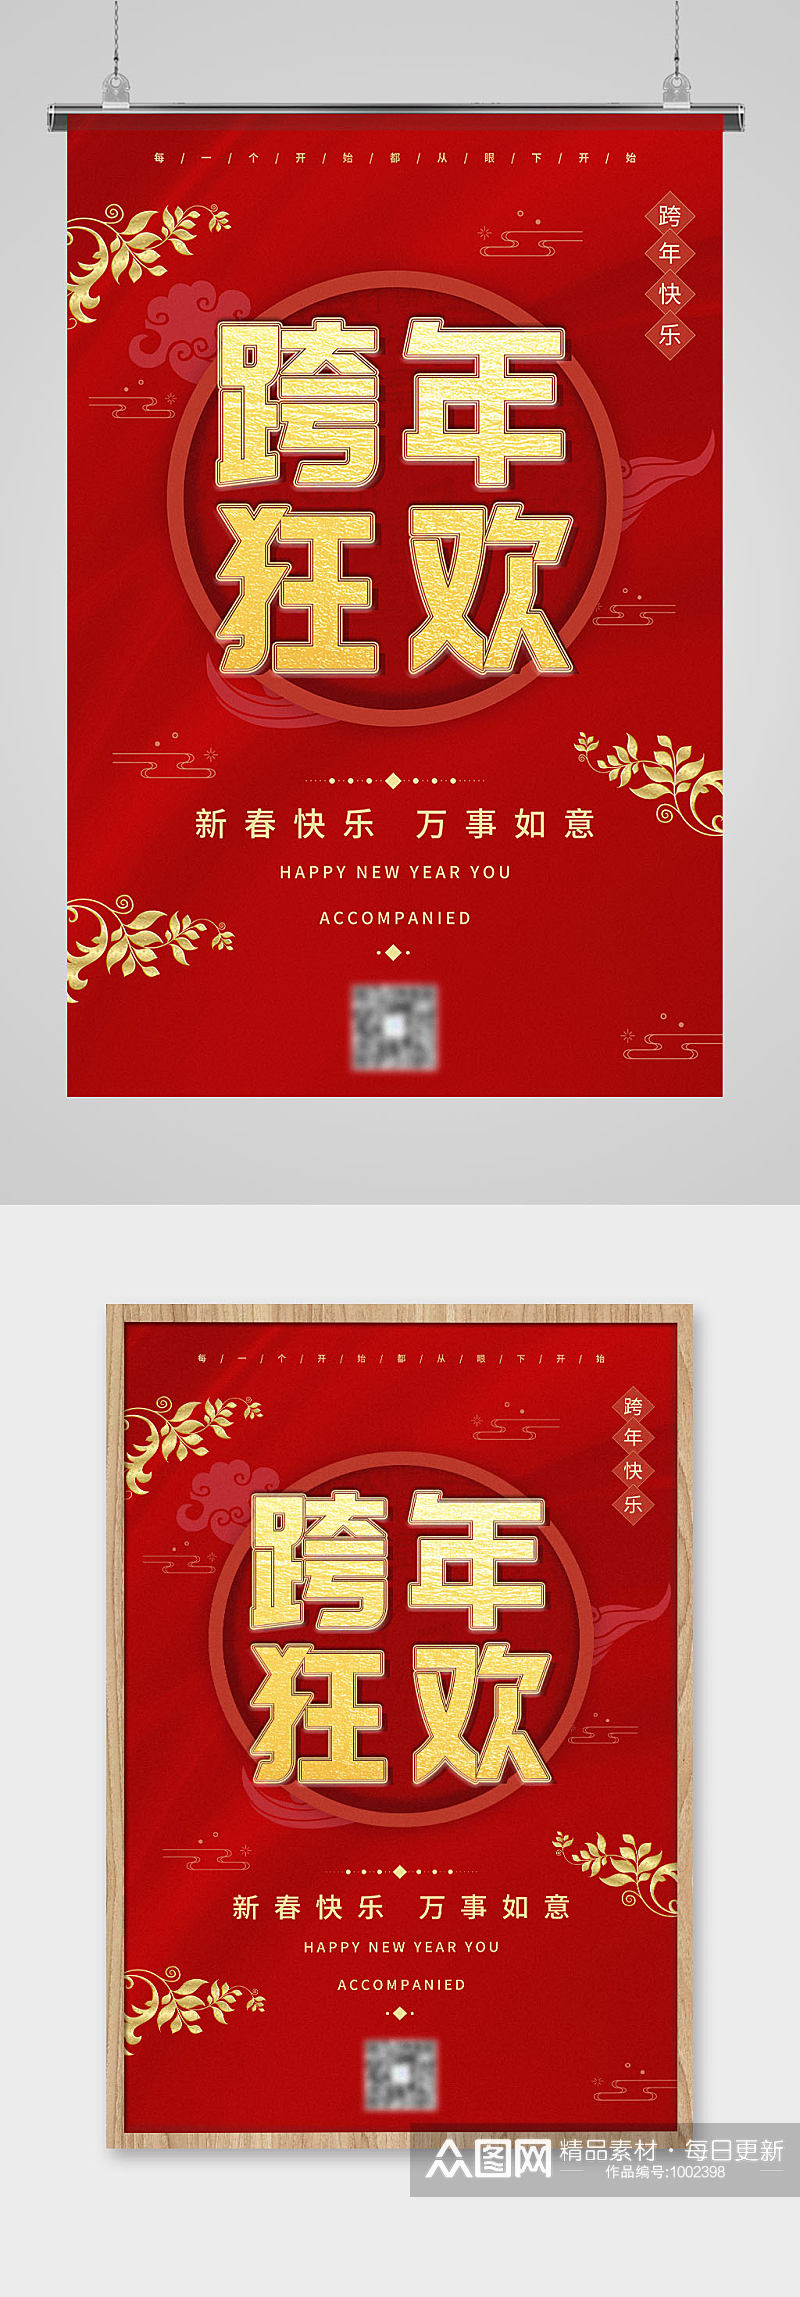 红色中国风喜庆吊坠跨年狂欢宣传海报素材